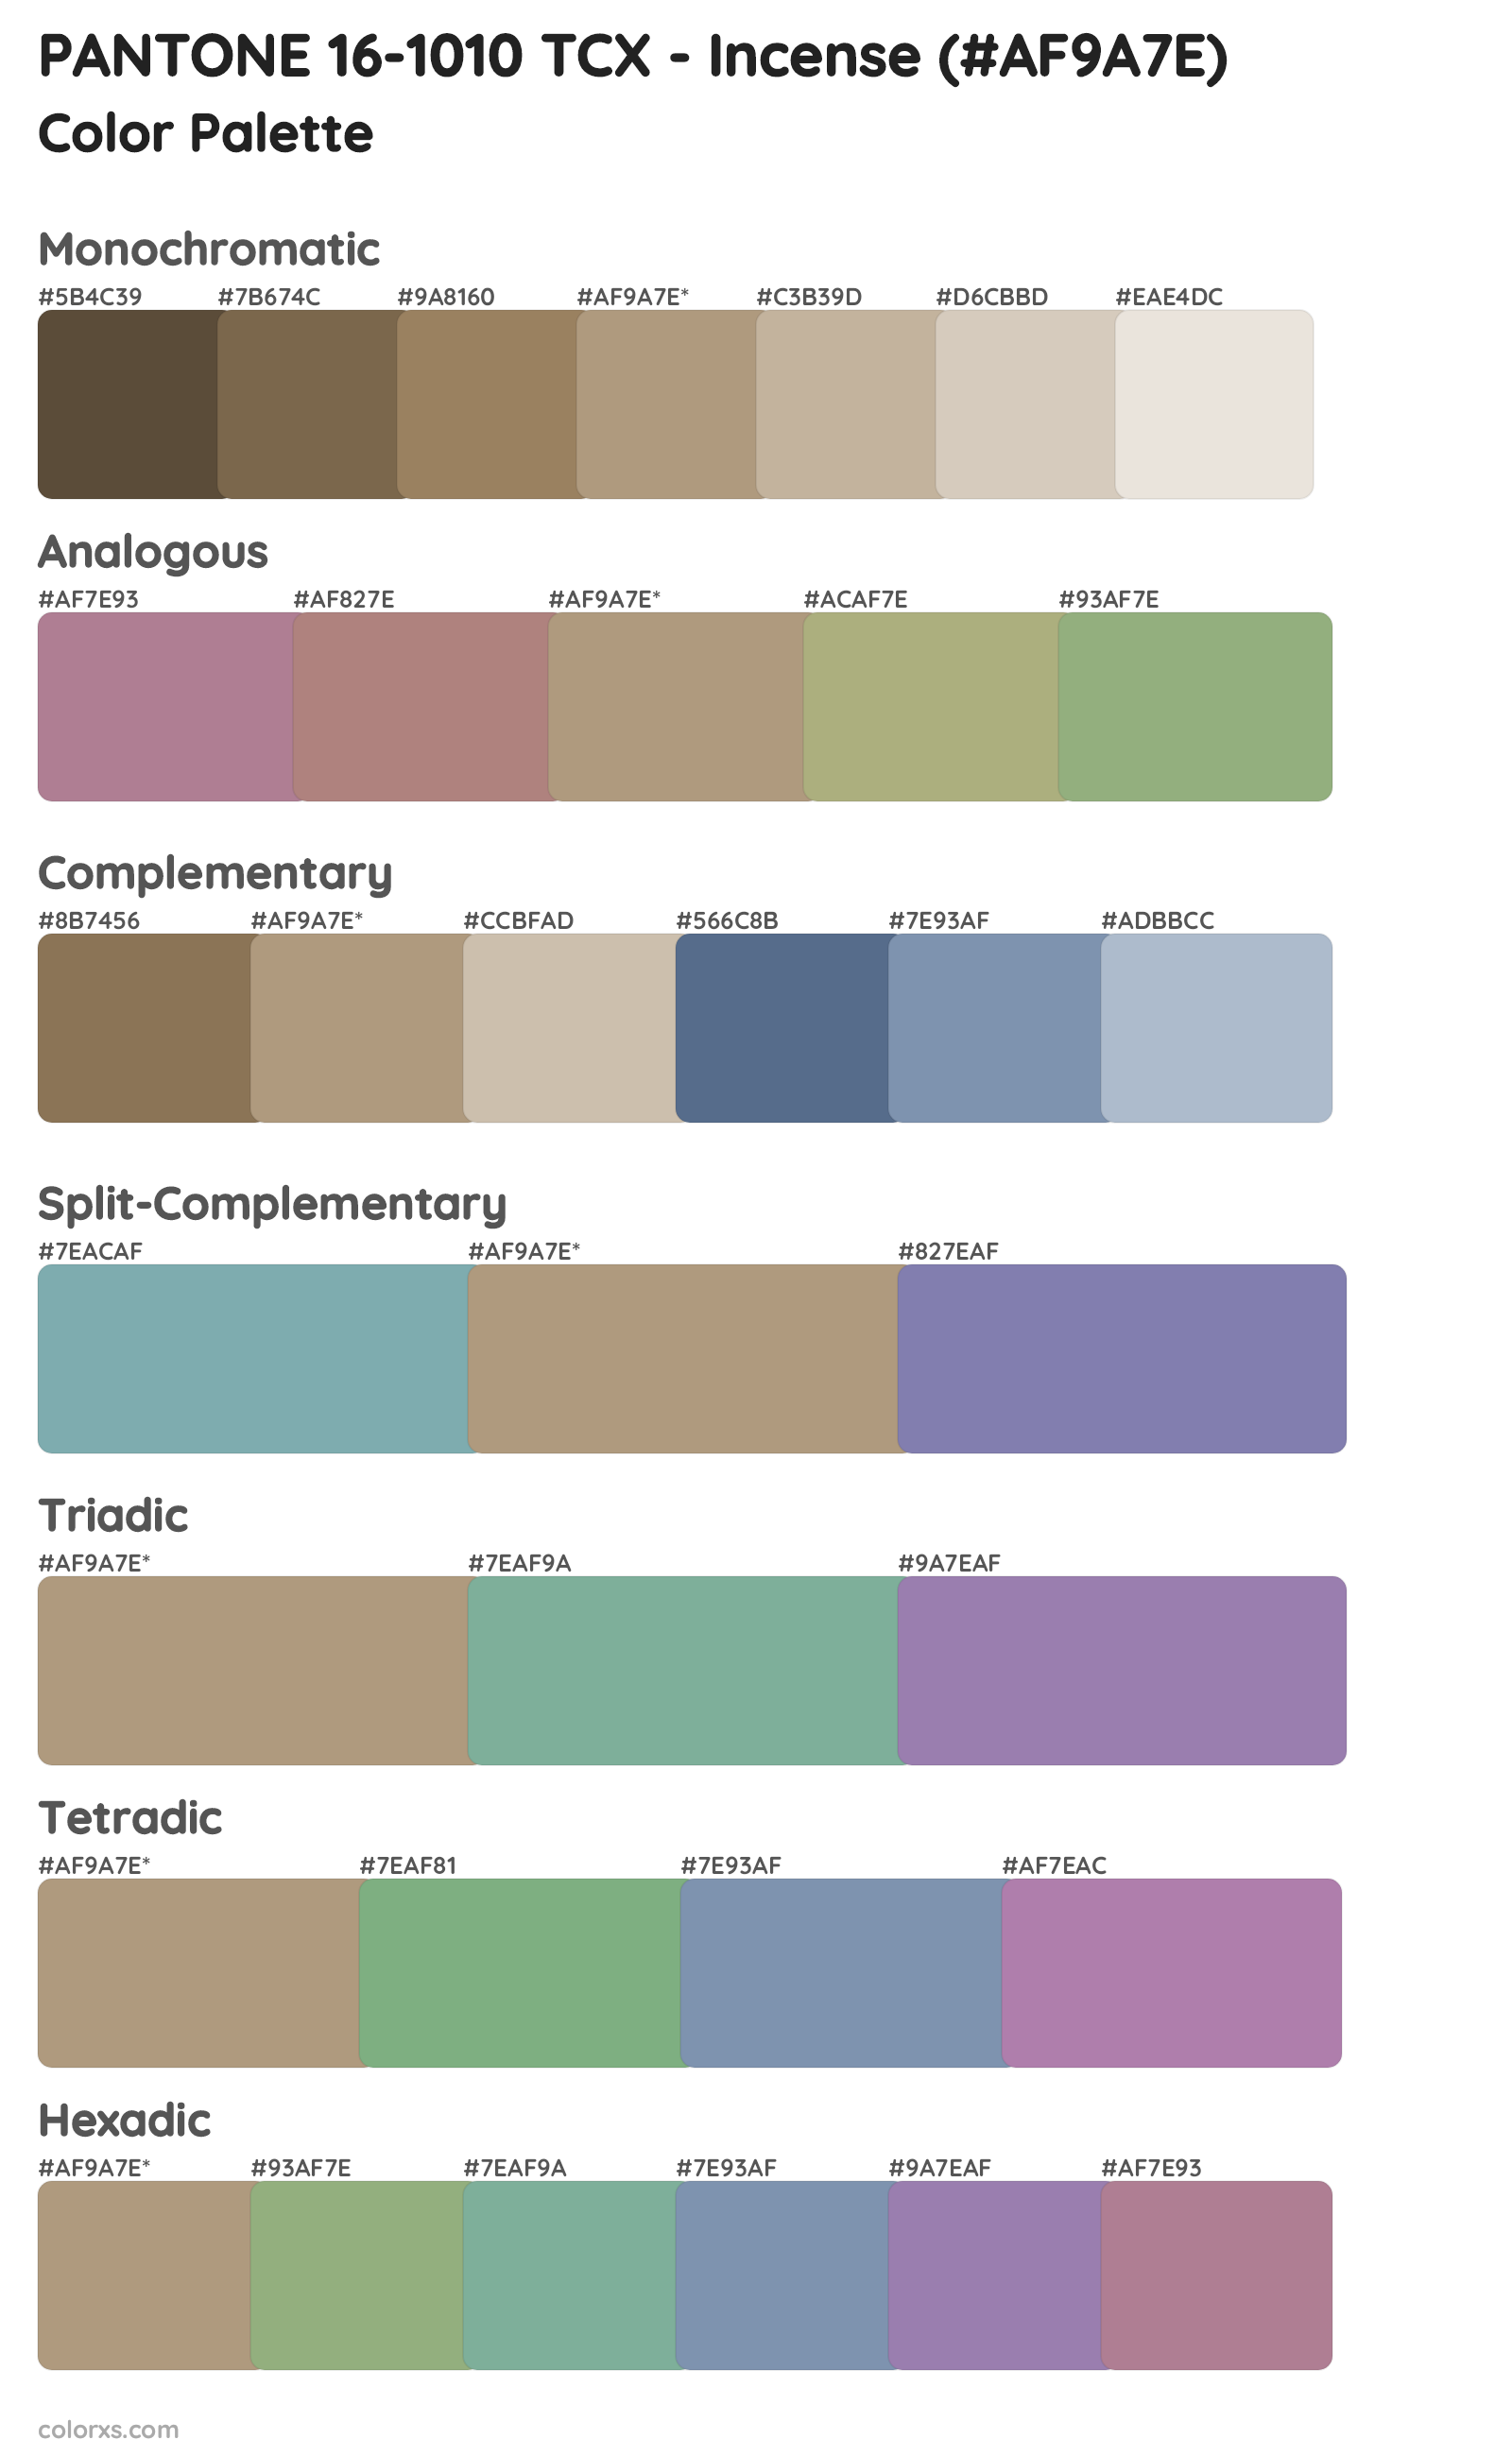 PANTONE 16-1010 TCX - Incense Color Scheme Palettes